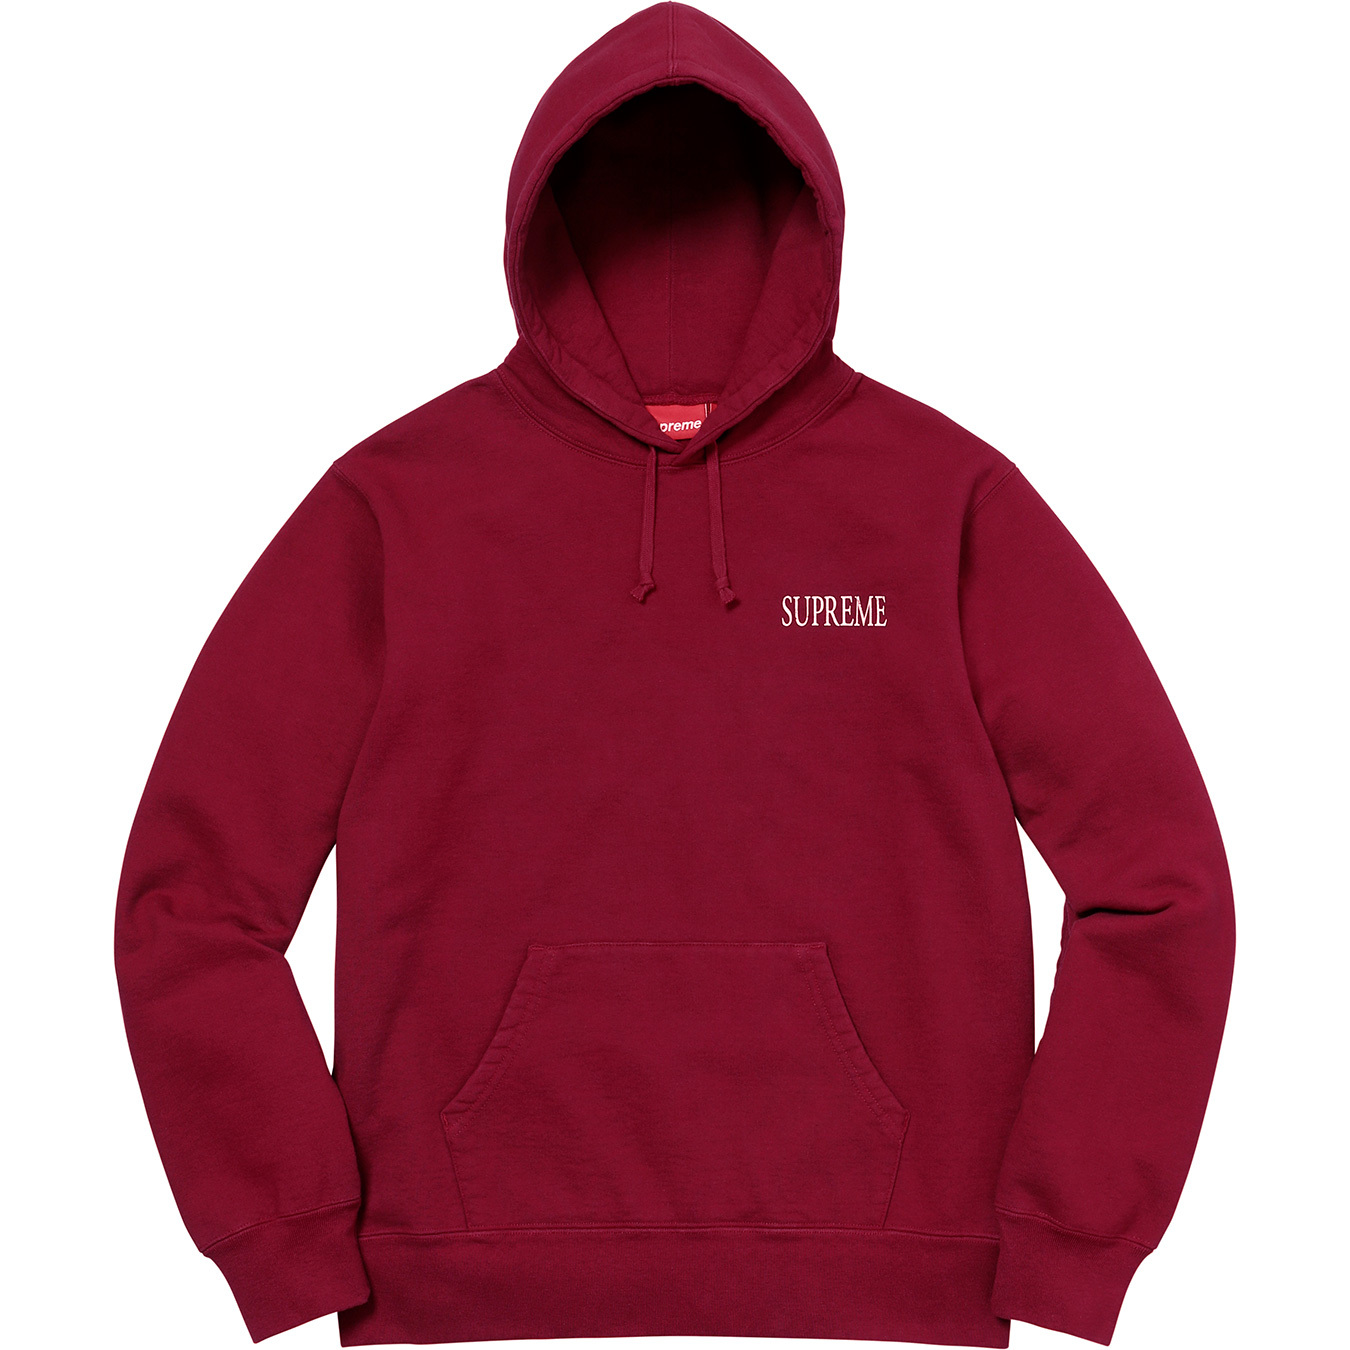 新規開店M supreme decline hooded sweatshirt パーカー